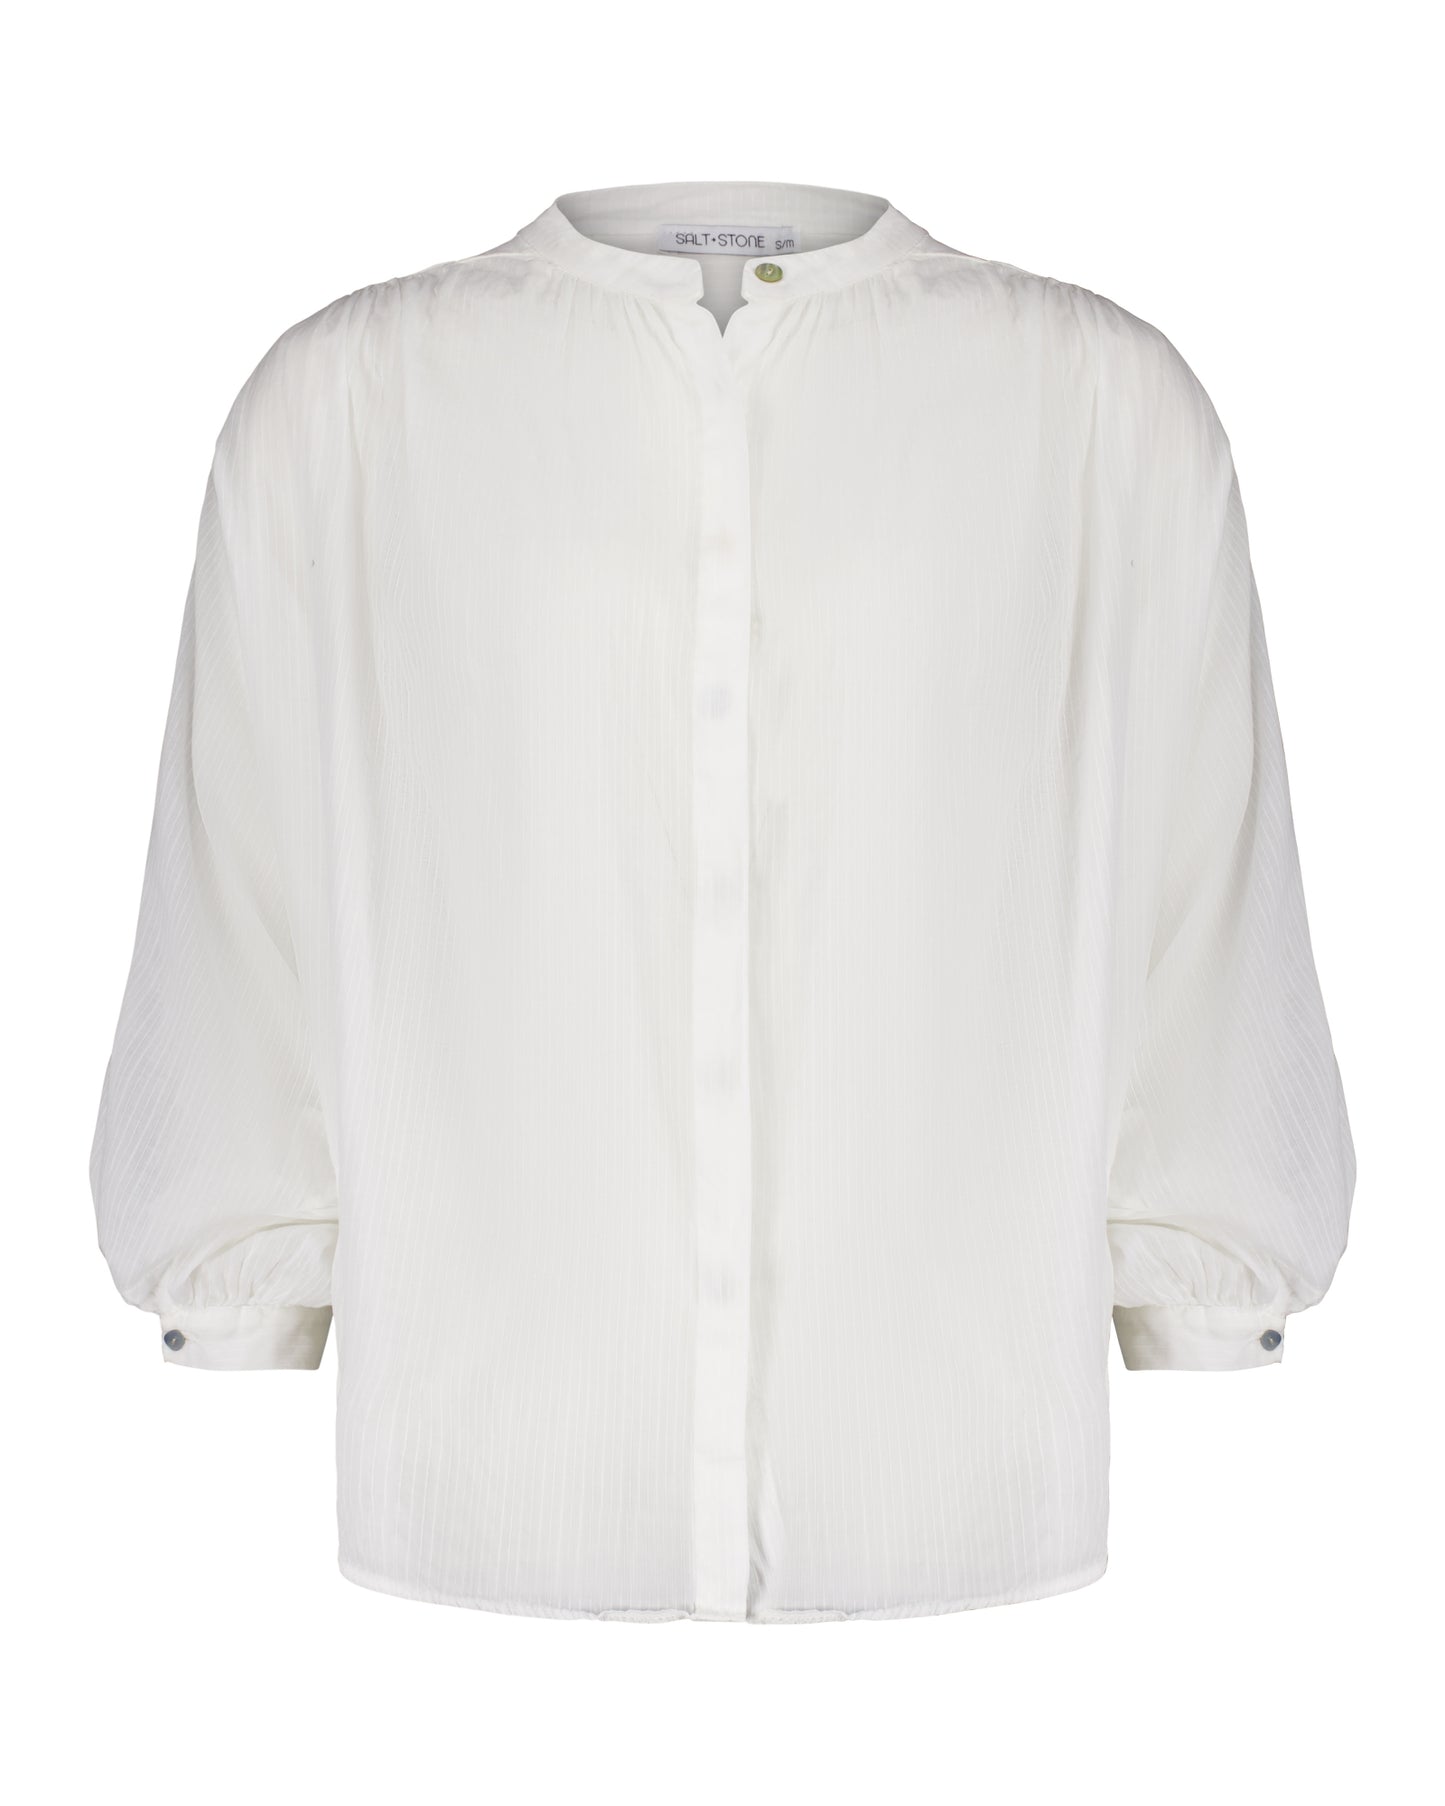 Salt+Stone Taylor Shirt - White